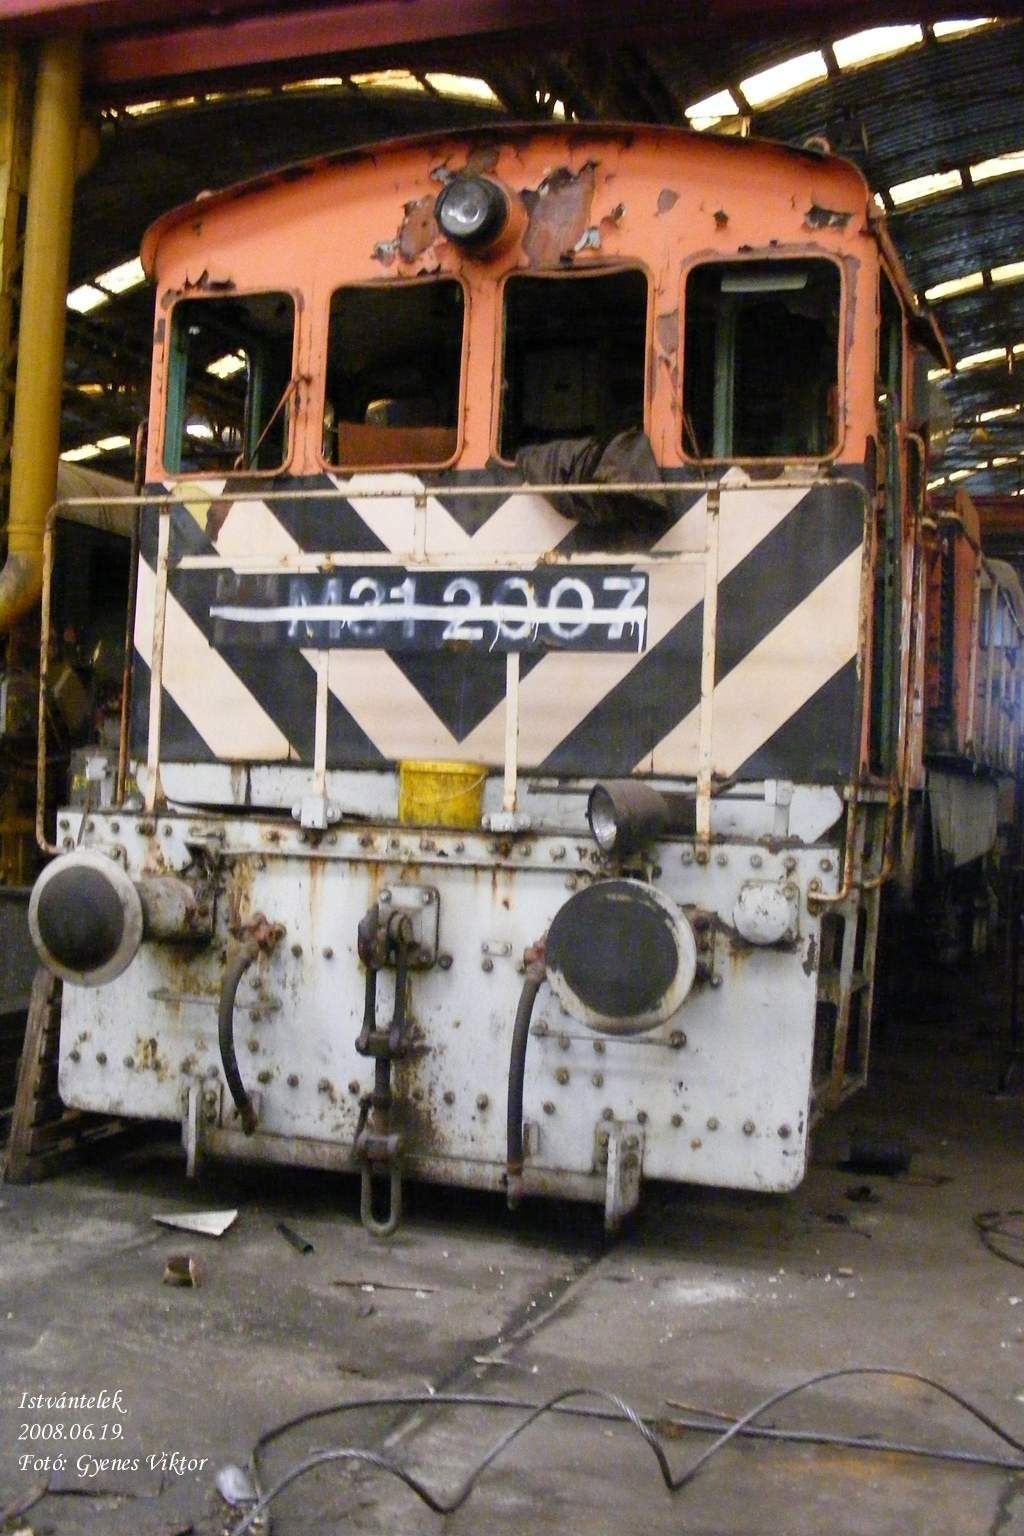 M31-2007 2